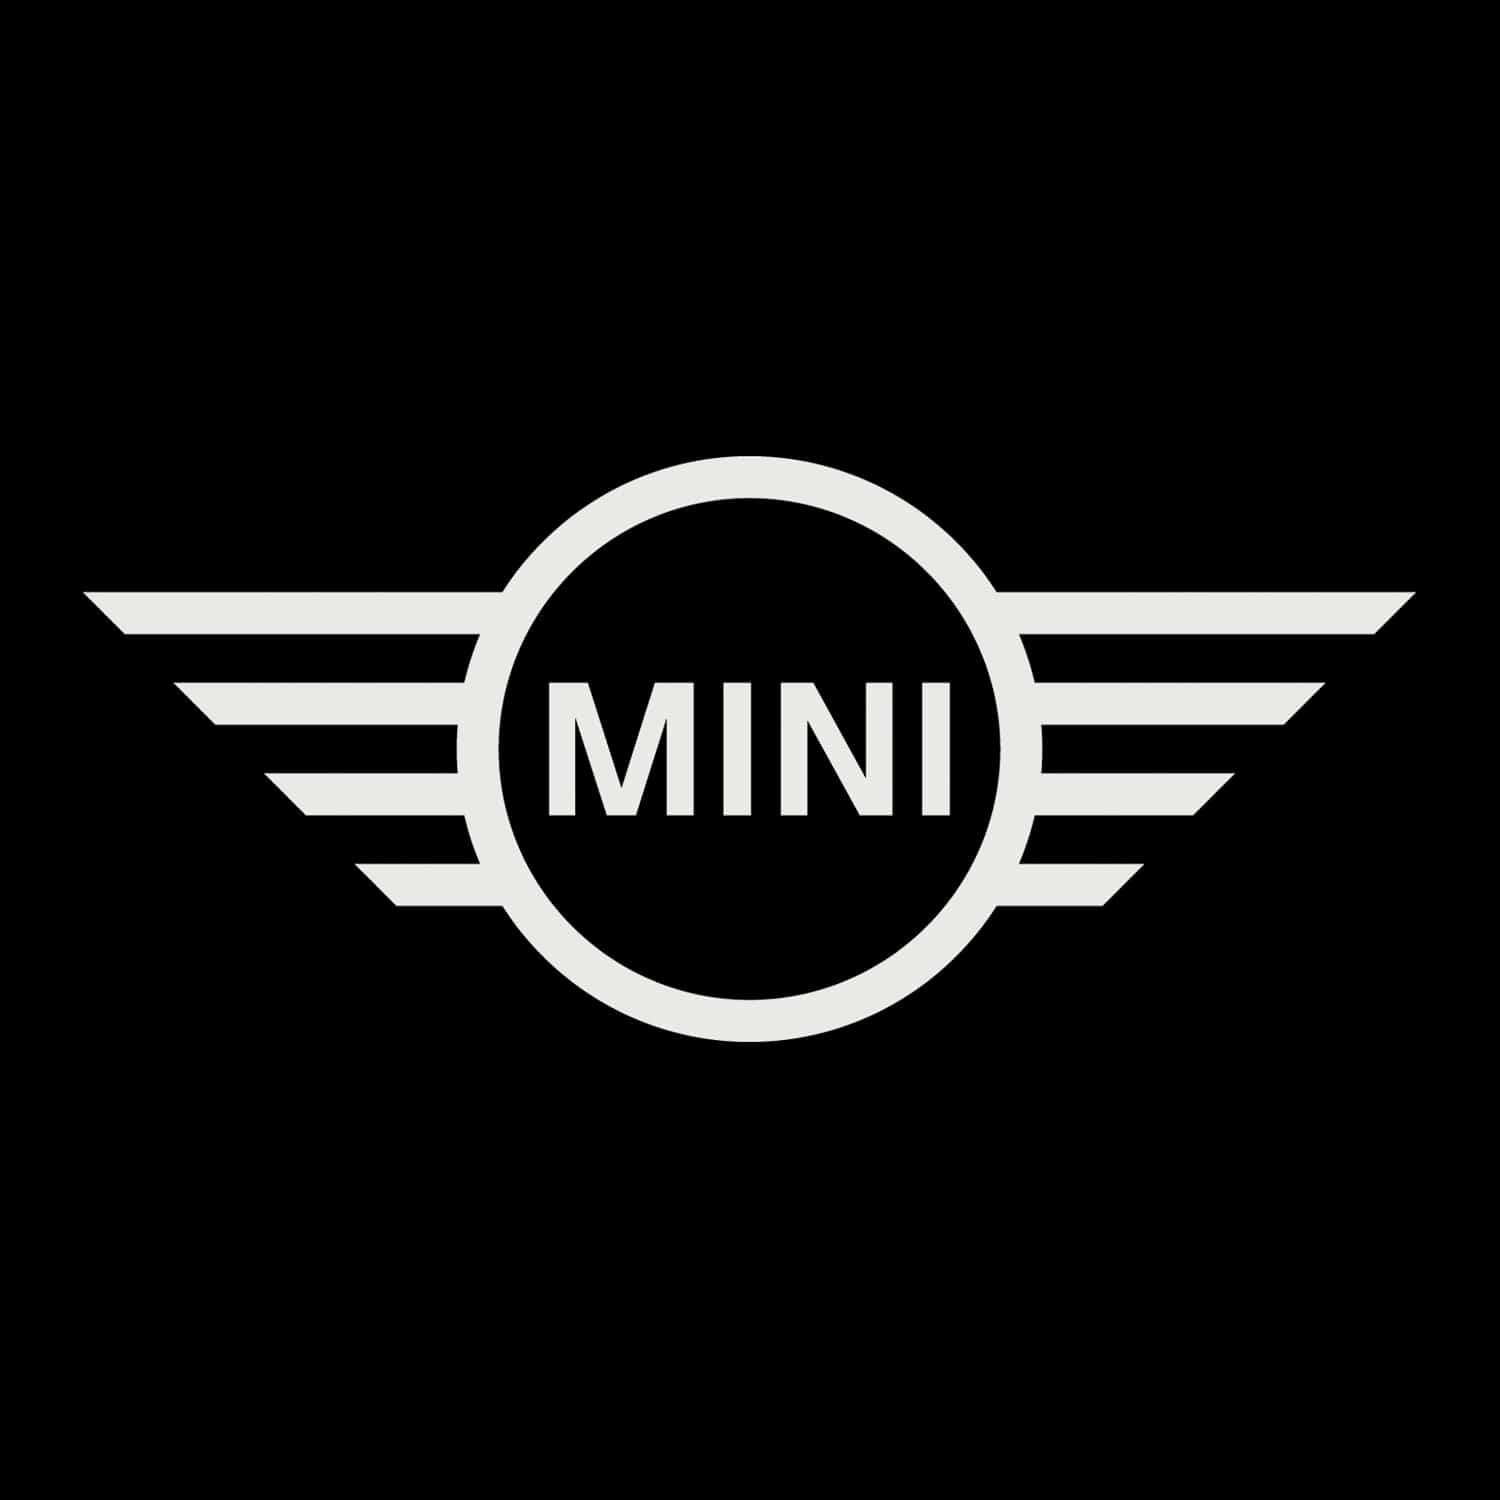 BMW Mini Logo - The New Mini Logo Design Unveiled